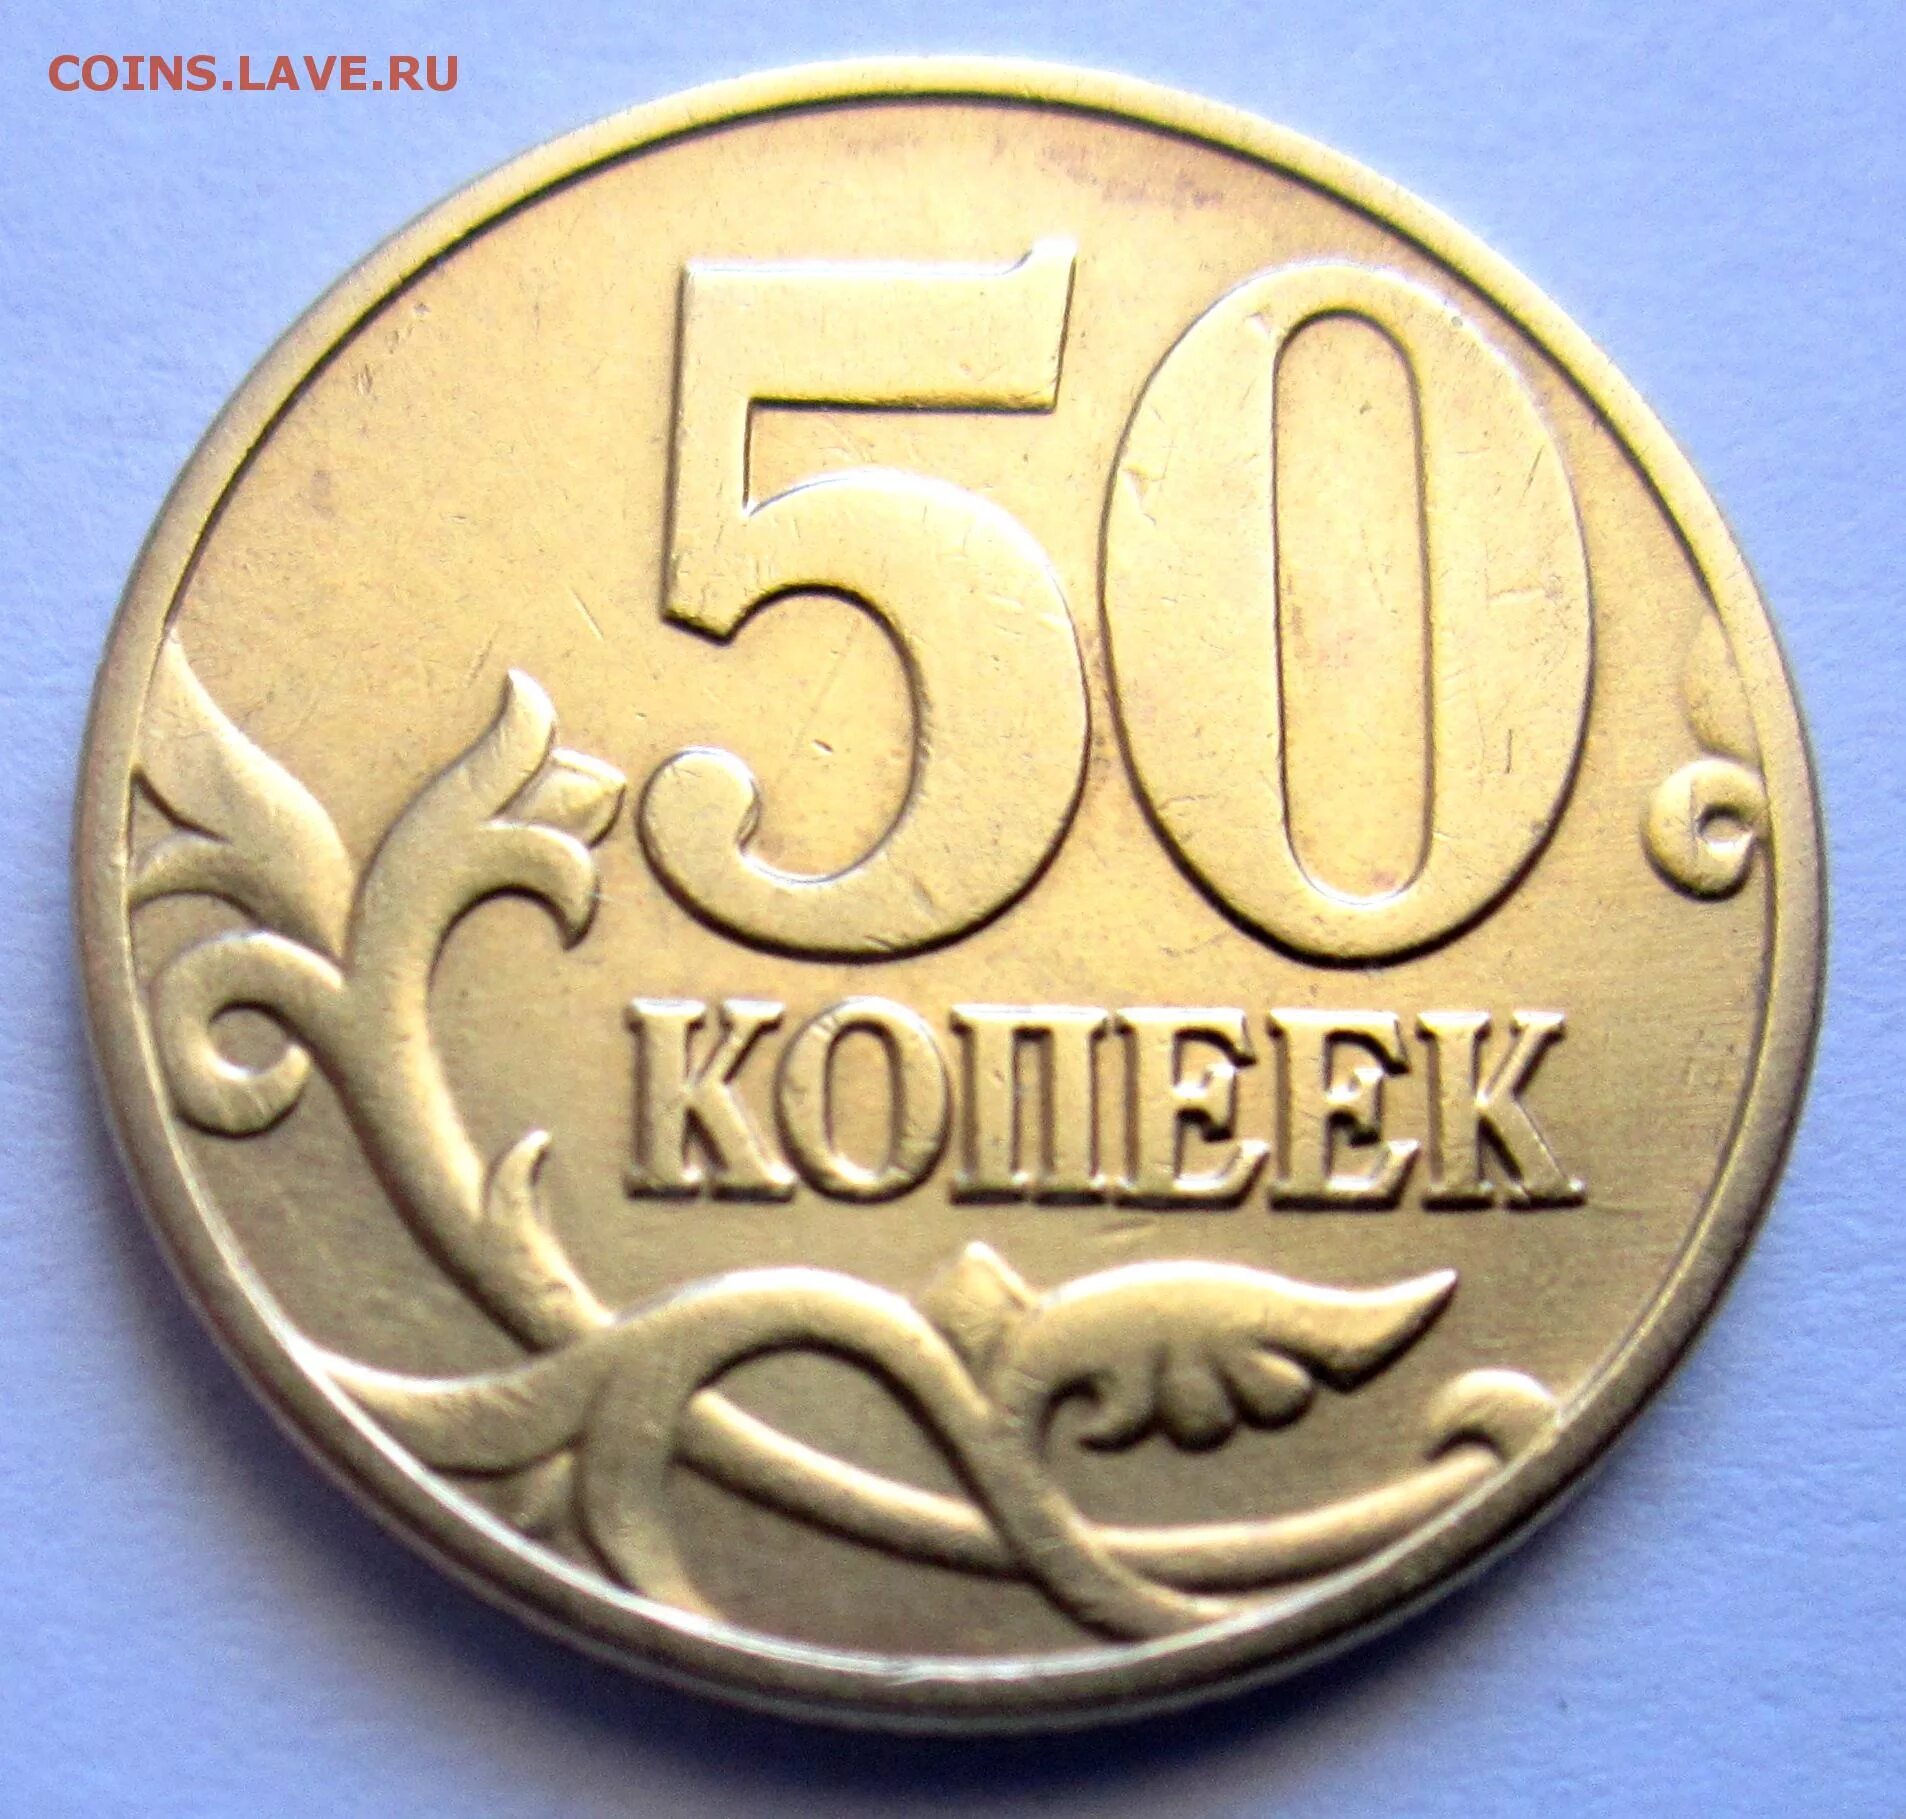 53 рубля 50 копеек